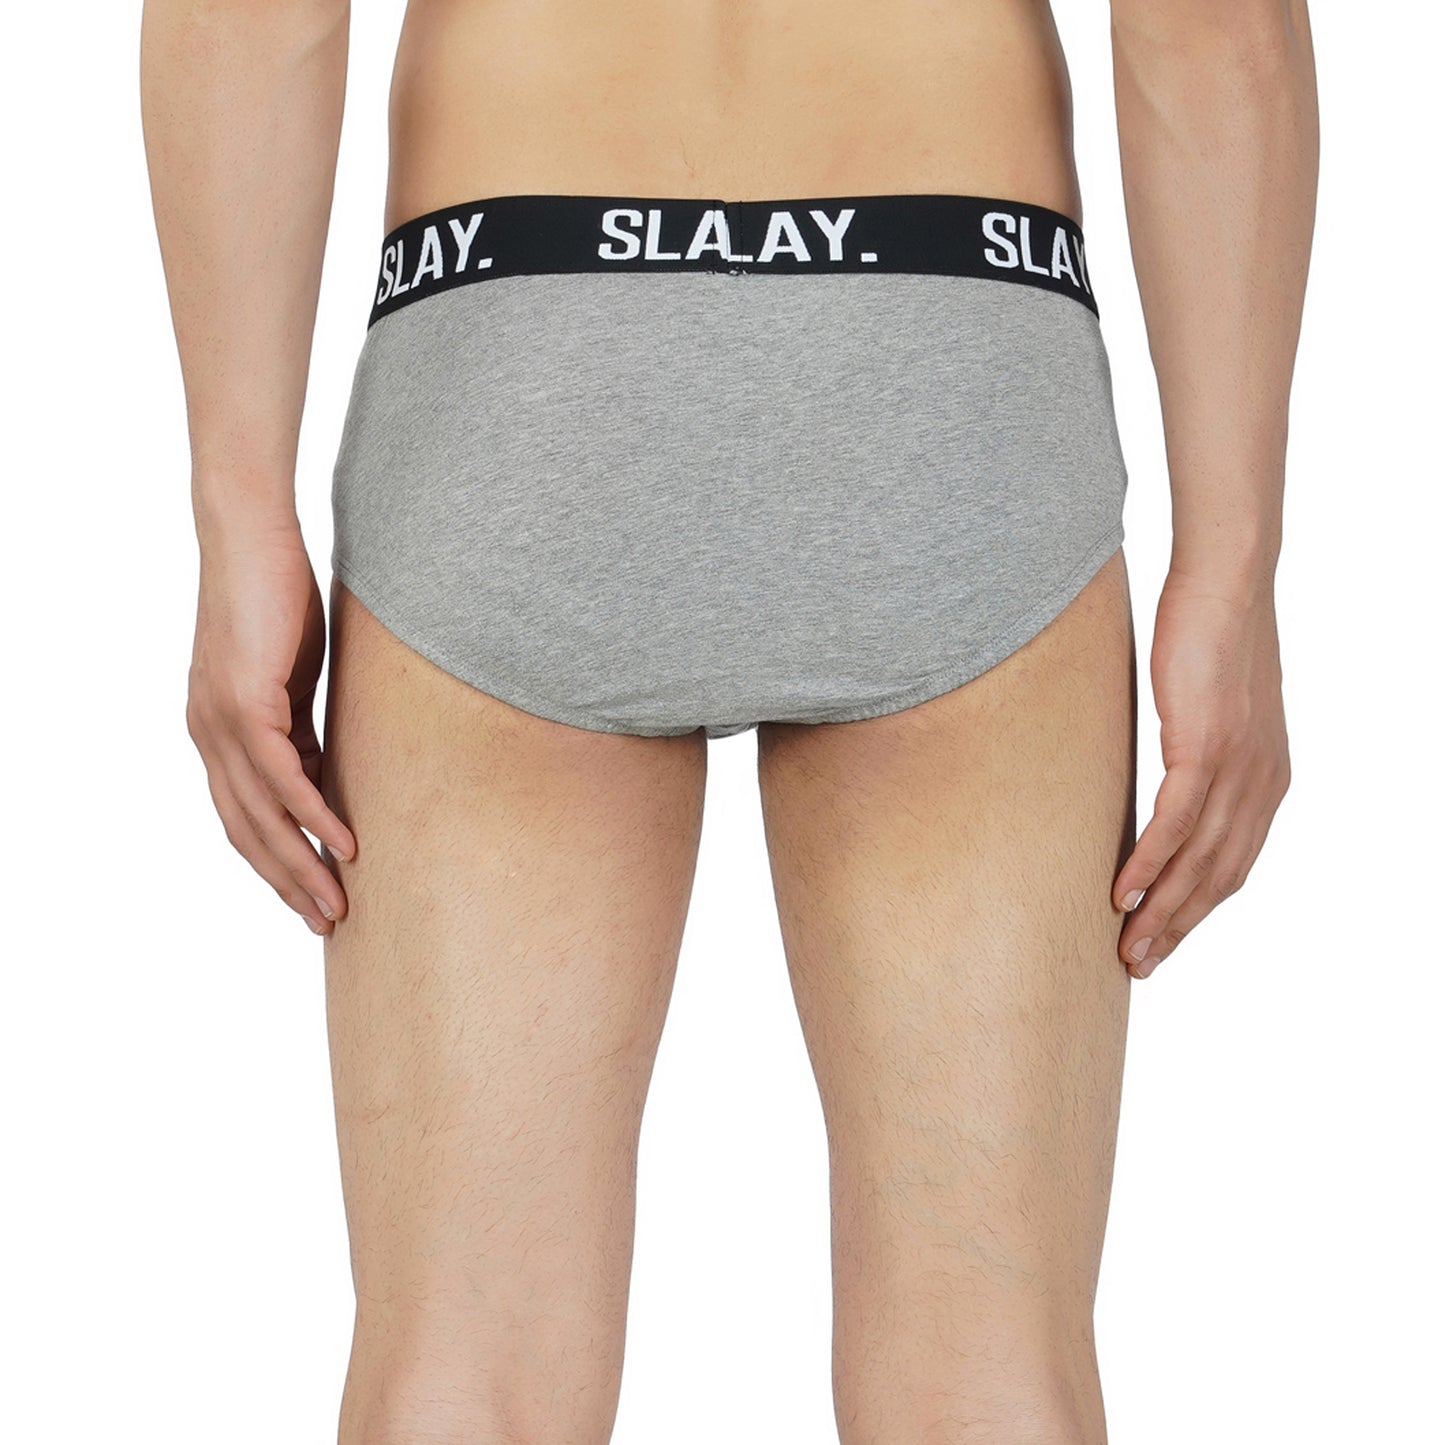 SLAY. Men's Grey Underwear Cotton Briefs